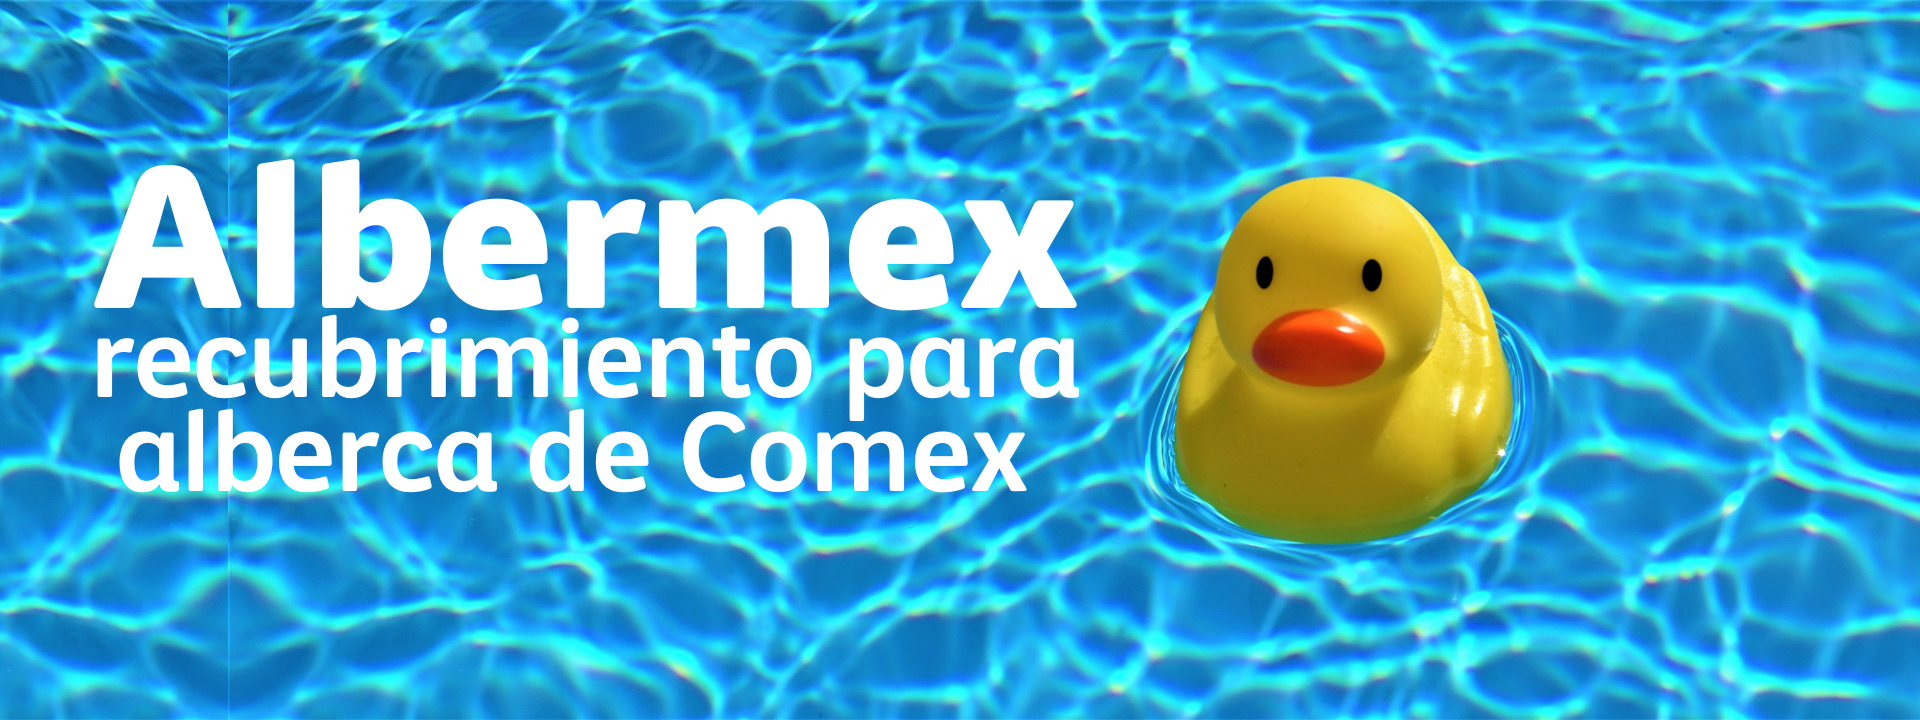 Recubrimiento para alberca Albermex, marca Comex.